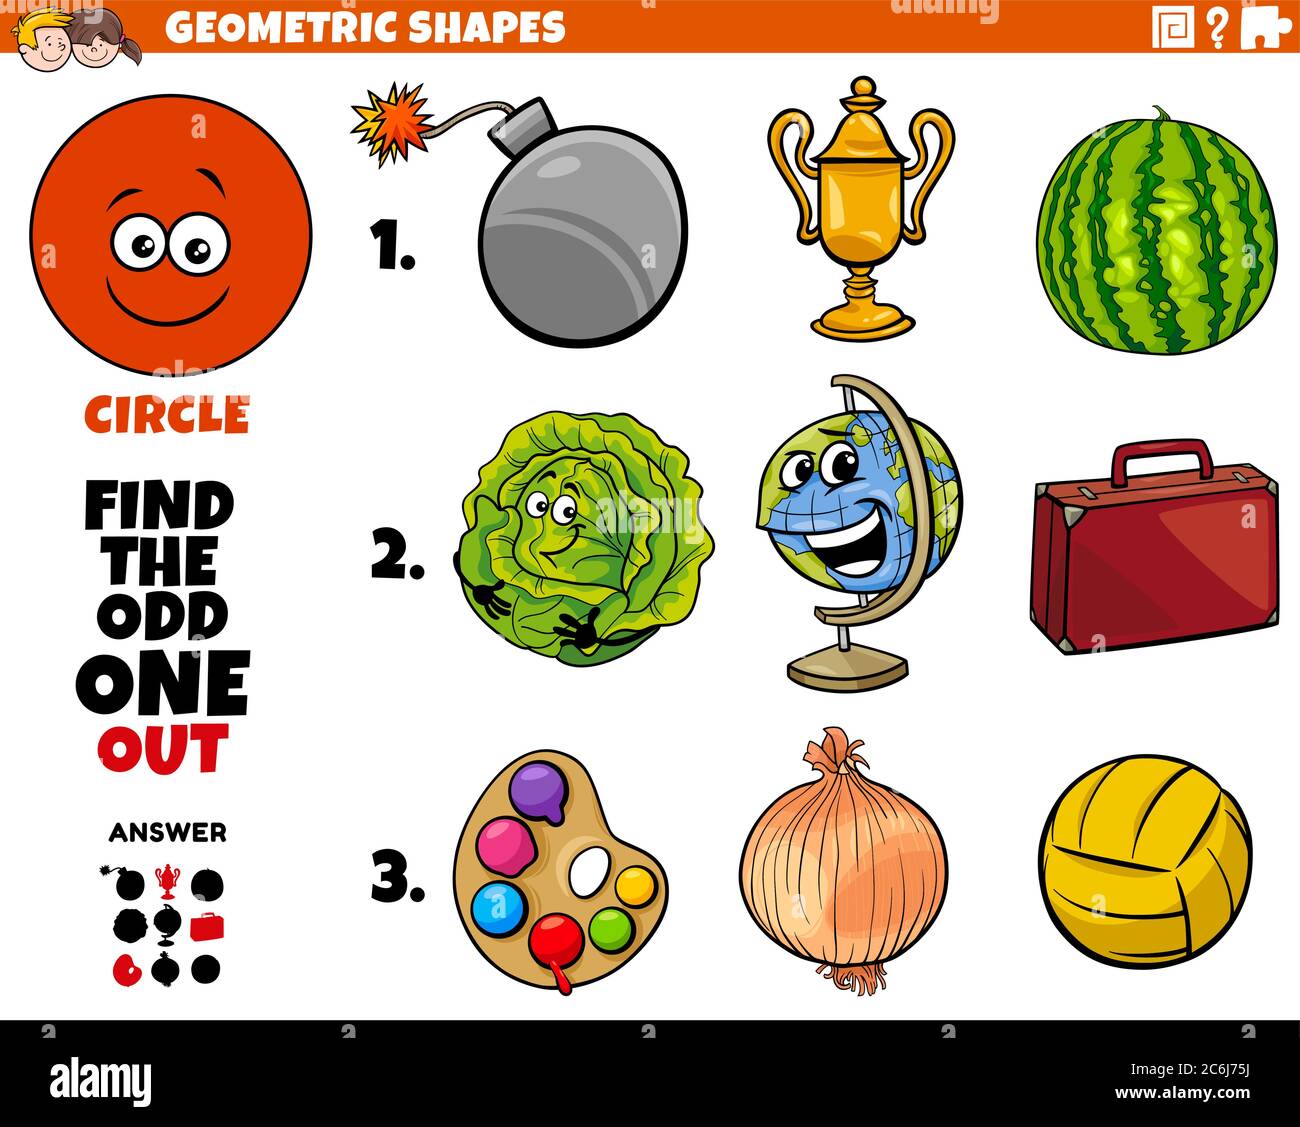 Dibujo de dibujos animados de forma geométrica de círculo Educativa Odd OBE  fuera de tarea para niños Imagen Vector de stock - Alamy